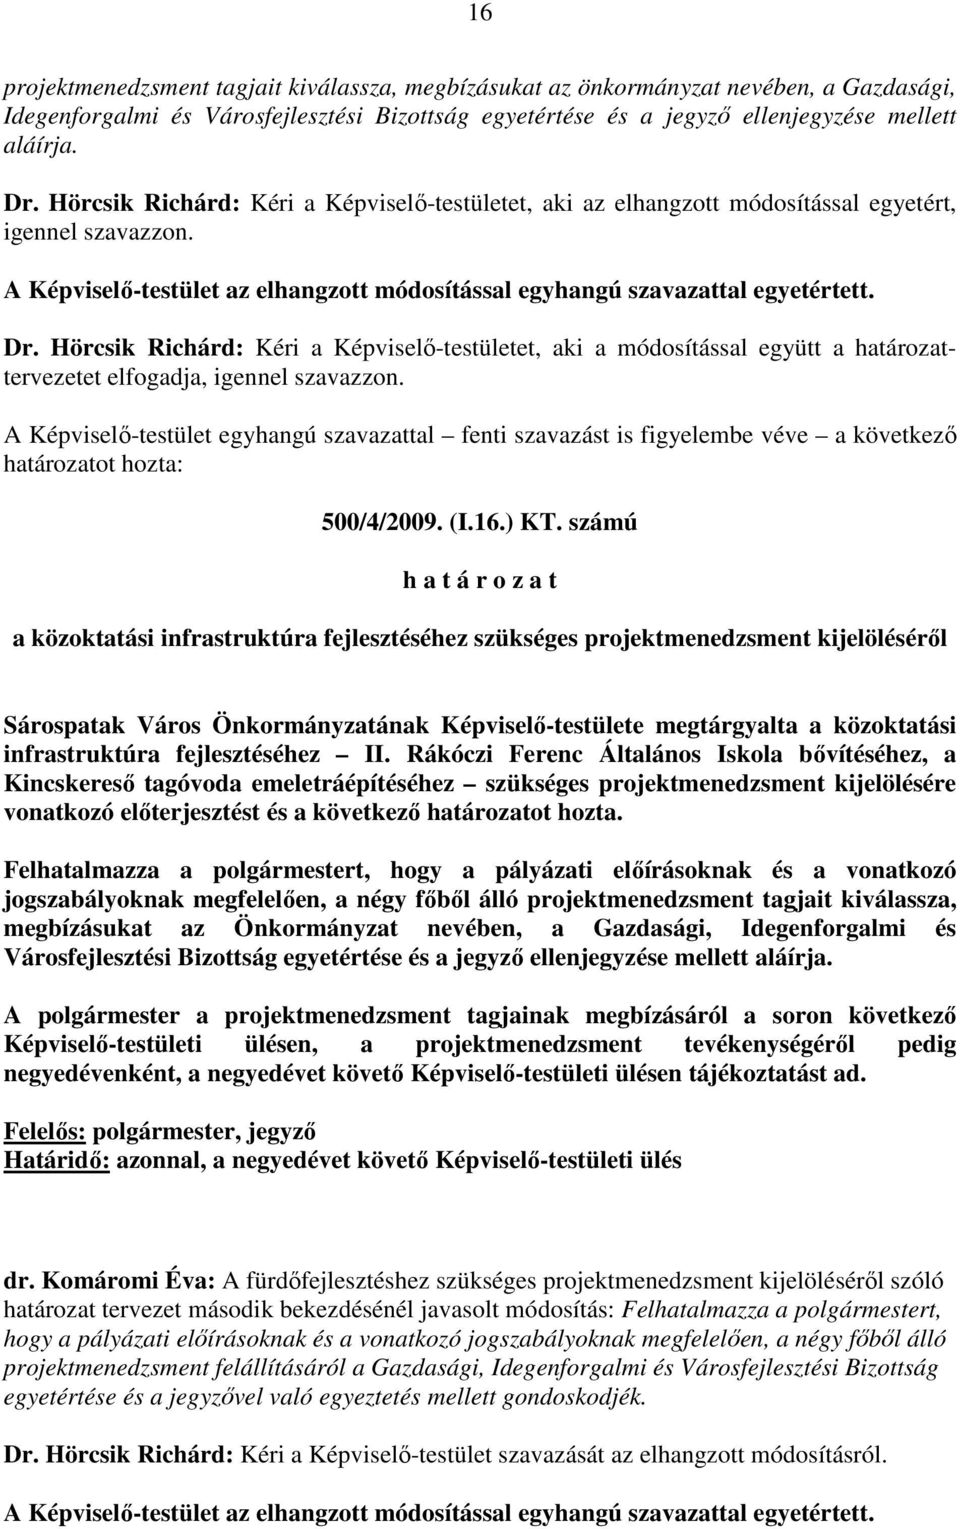 Hörcsik Richárd: Kéri a Képviselı-testületet, aki a módosítással együtt a határozattervezetet elfogadja, igennel szavazzon.